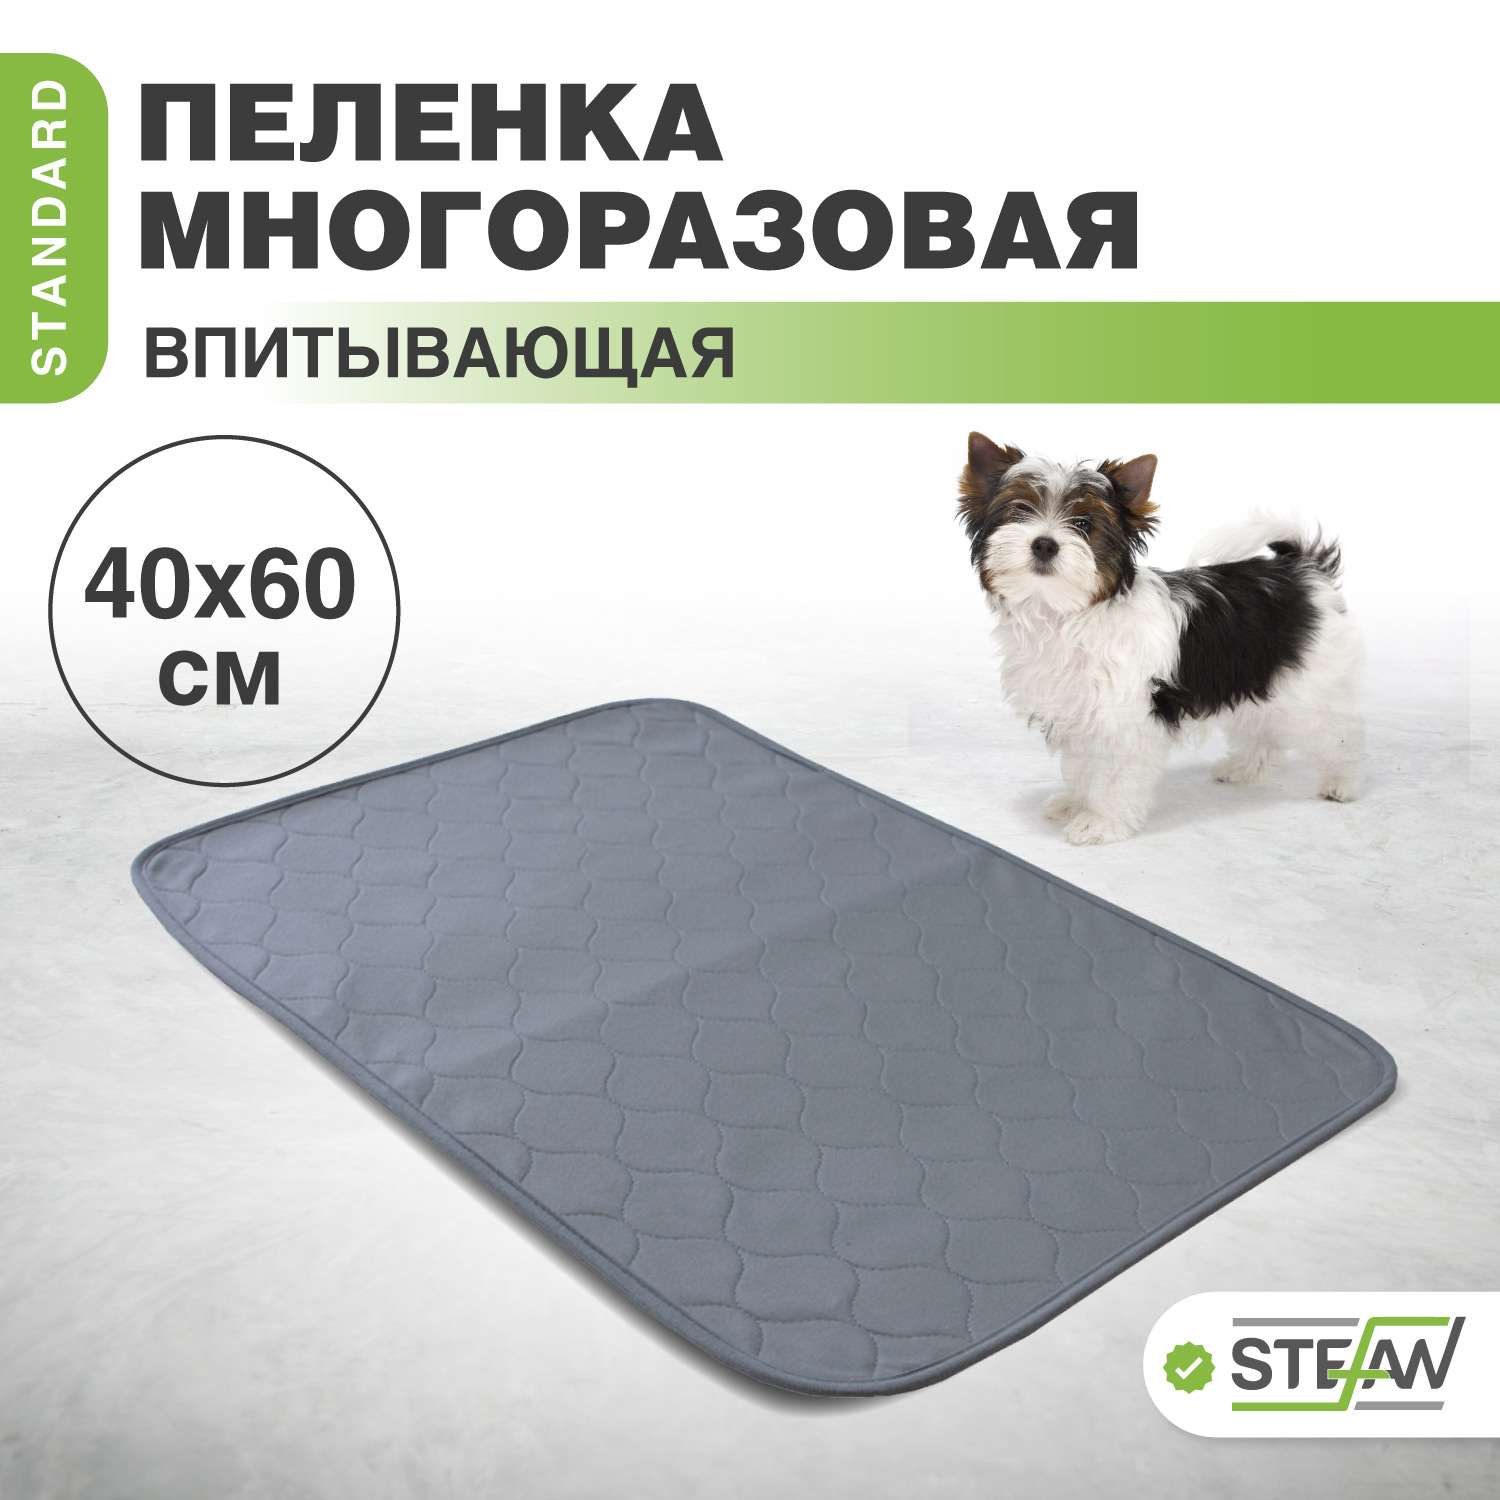 Пеленка для животных Stefan впитывающая многоразовая серая 40х60 см - фото 1